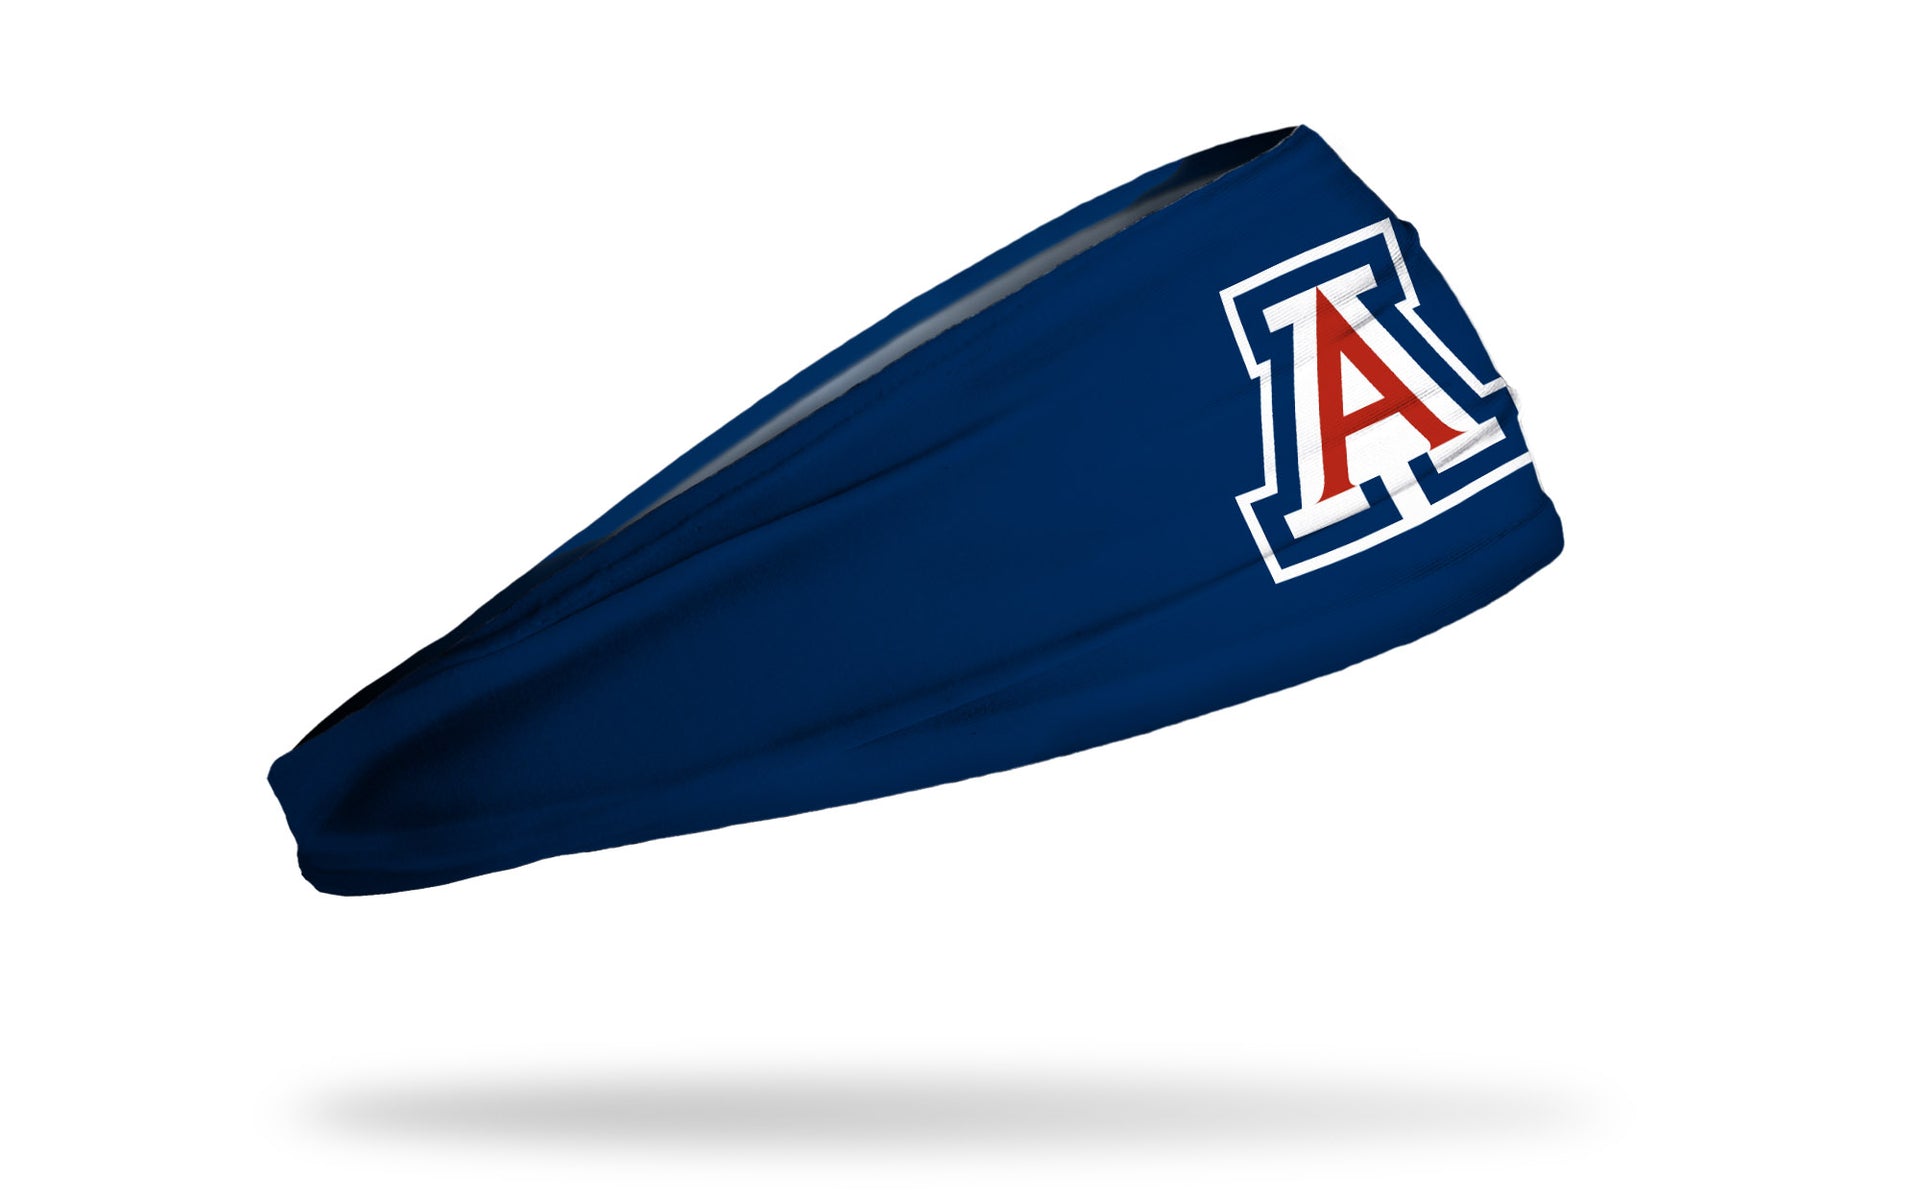 University of Arizona: A Logo Navy Headband - View 2